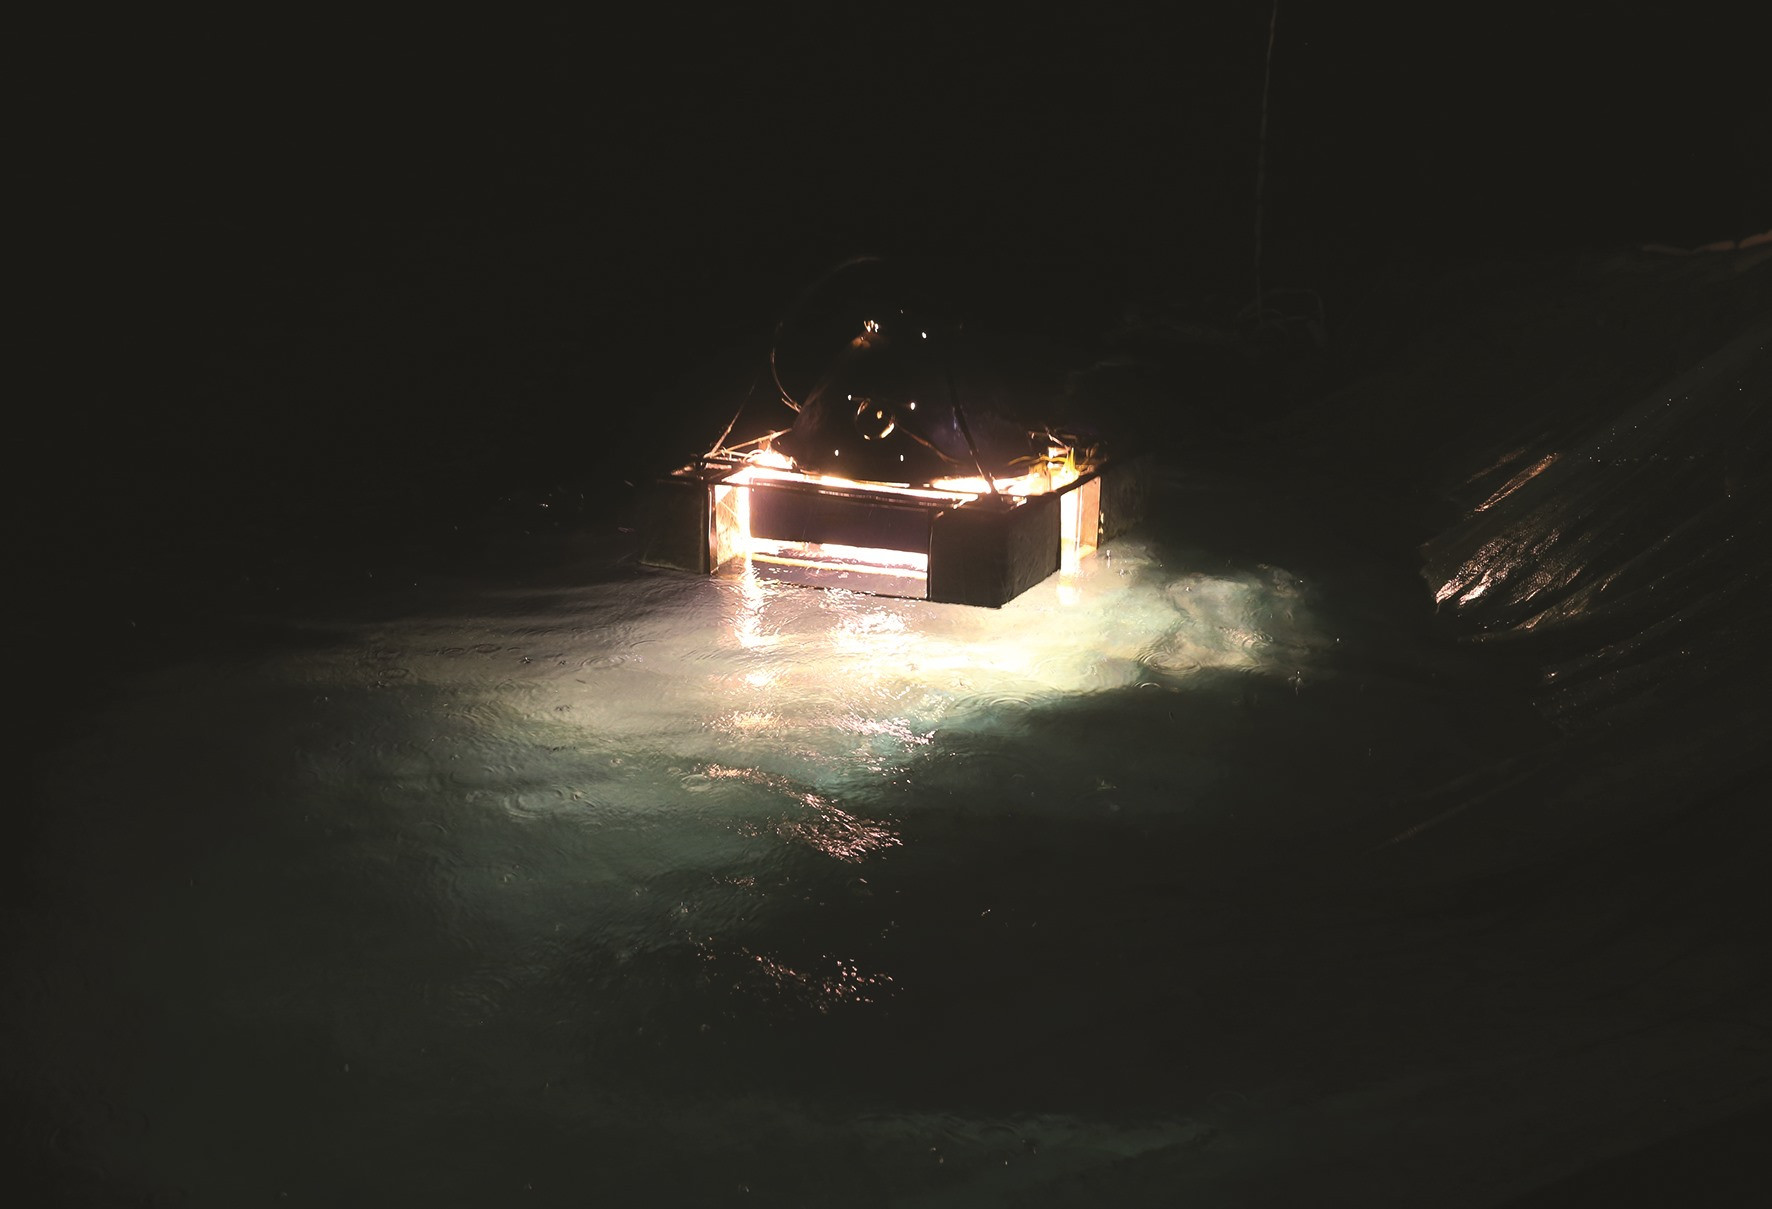 Hệ thống bóng đèn trên tàu tắt hẳn chỉ còn một bóng được thiết kế nổi trên mặt nước để gom cá vào.